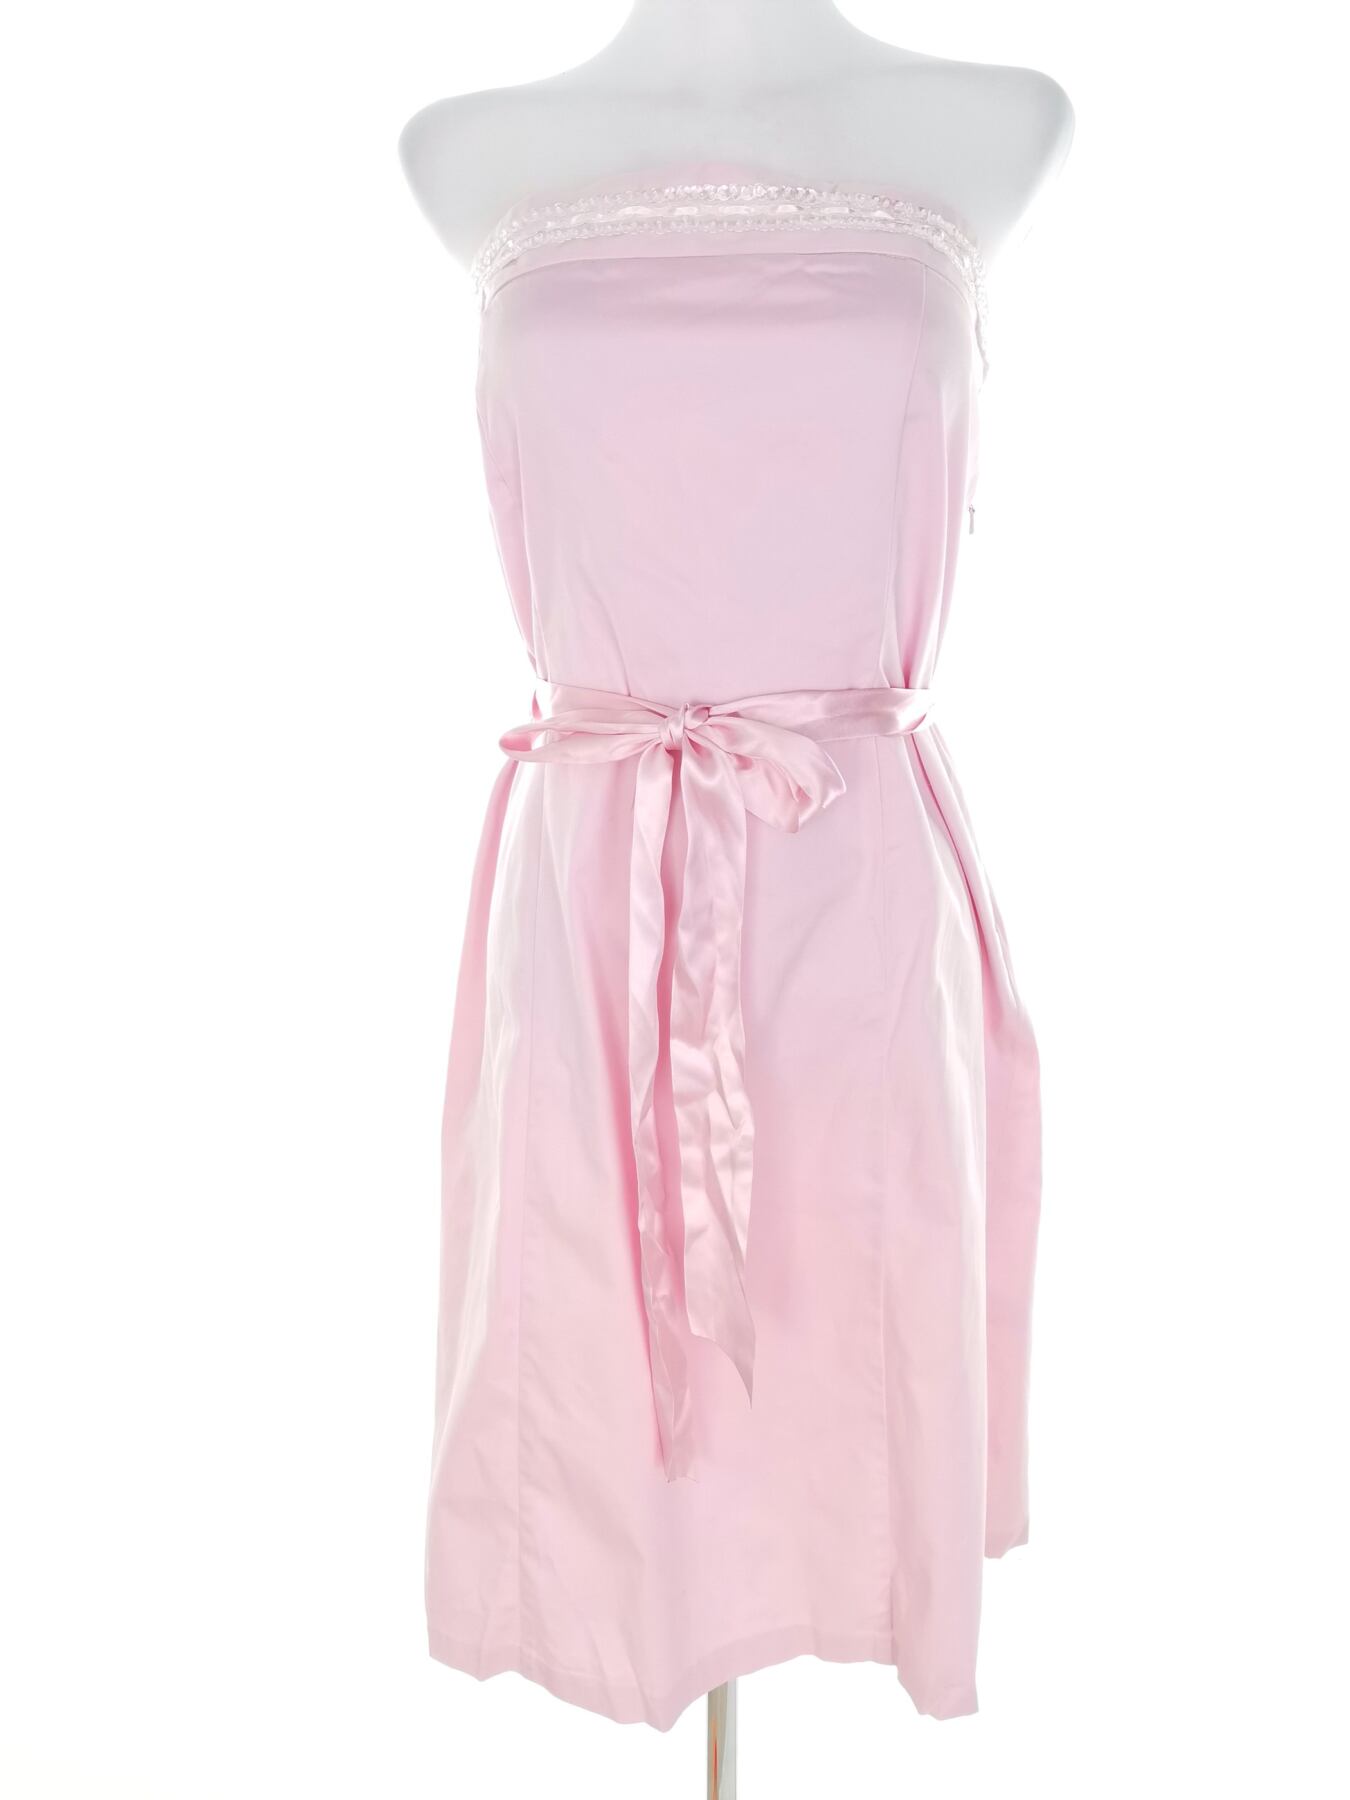 For Women Rozmiar 14 (40) Kolor Różowy Odkryte Ramiona Suknia Balowa Sukienka Wieczorowa Bezrękawnik Do Kolan Materiał Bawełna